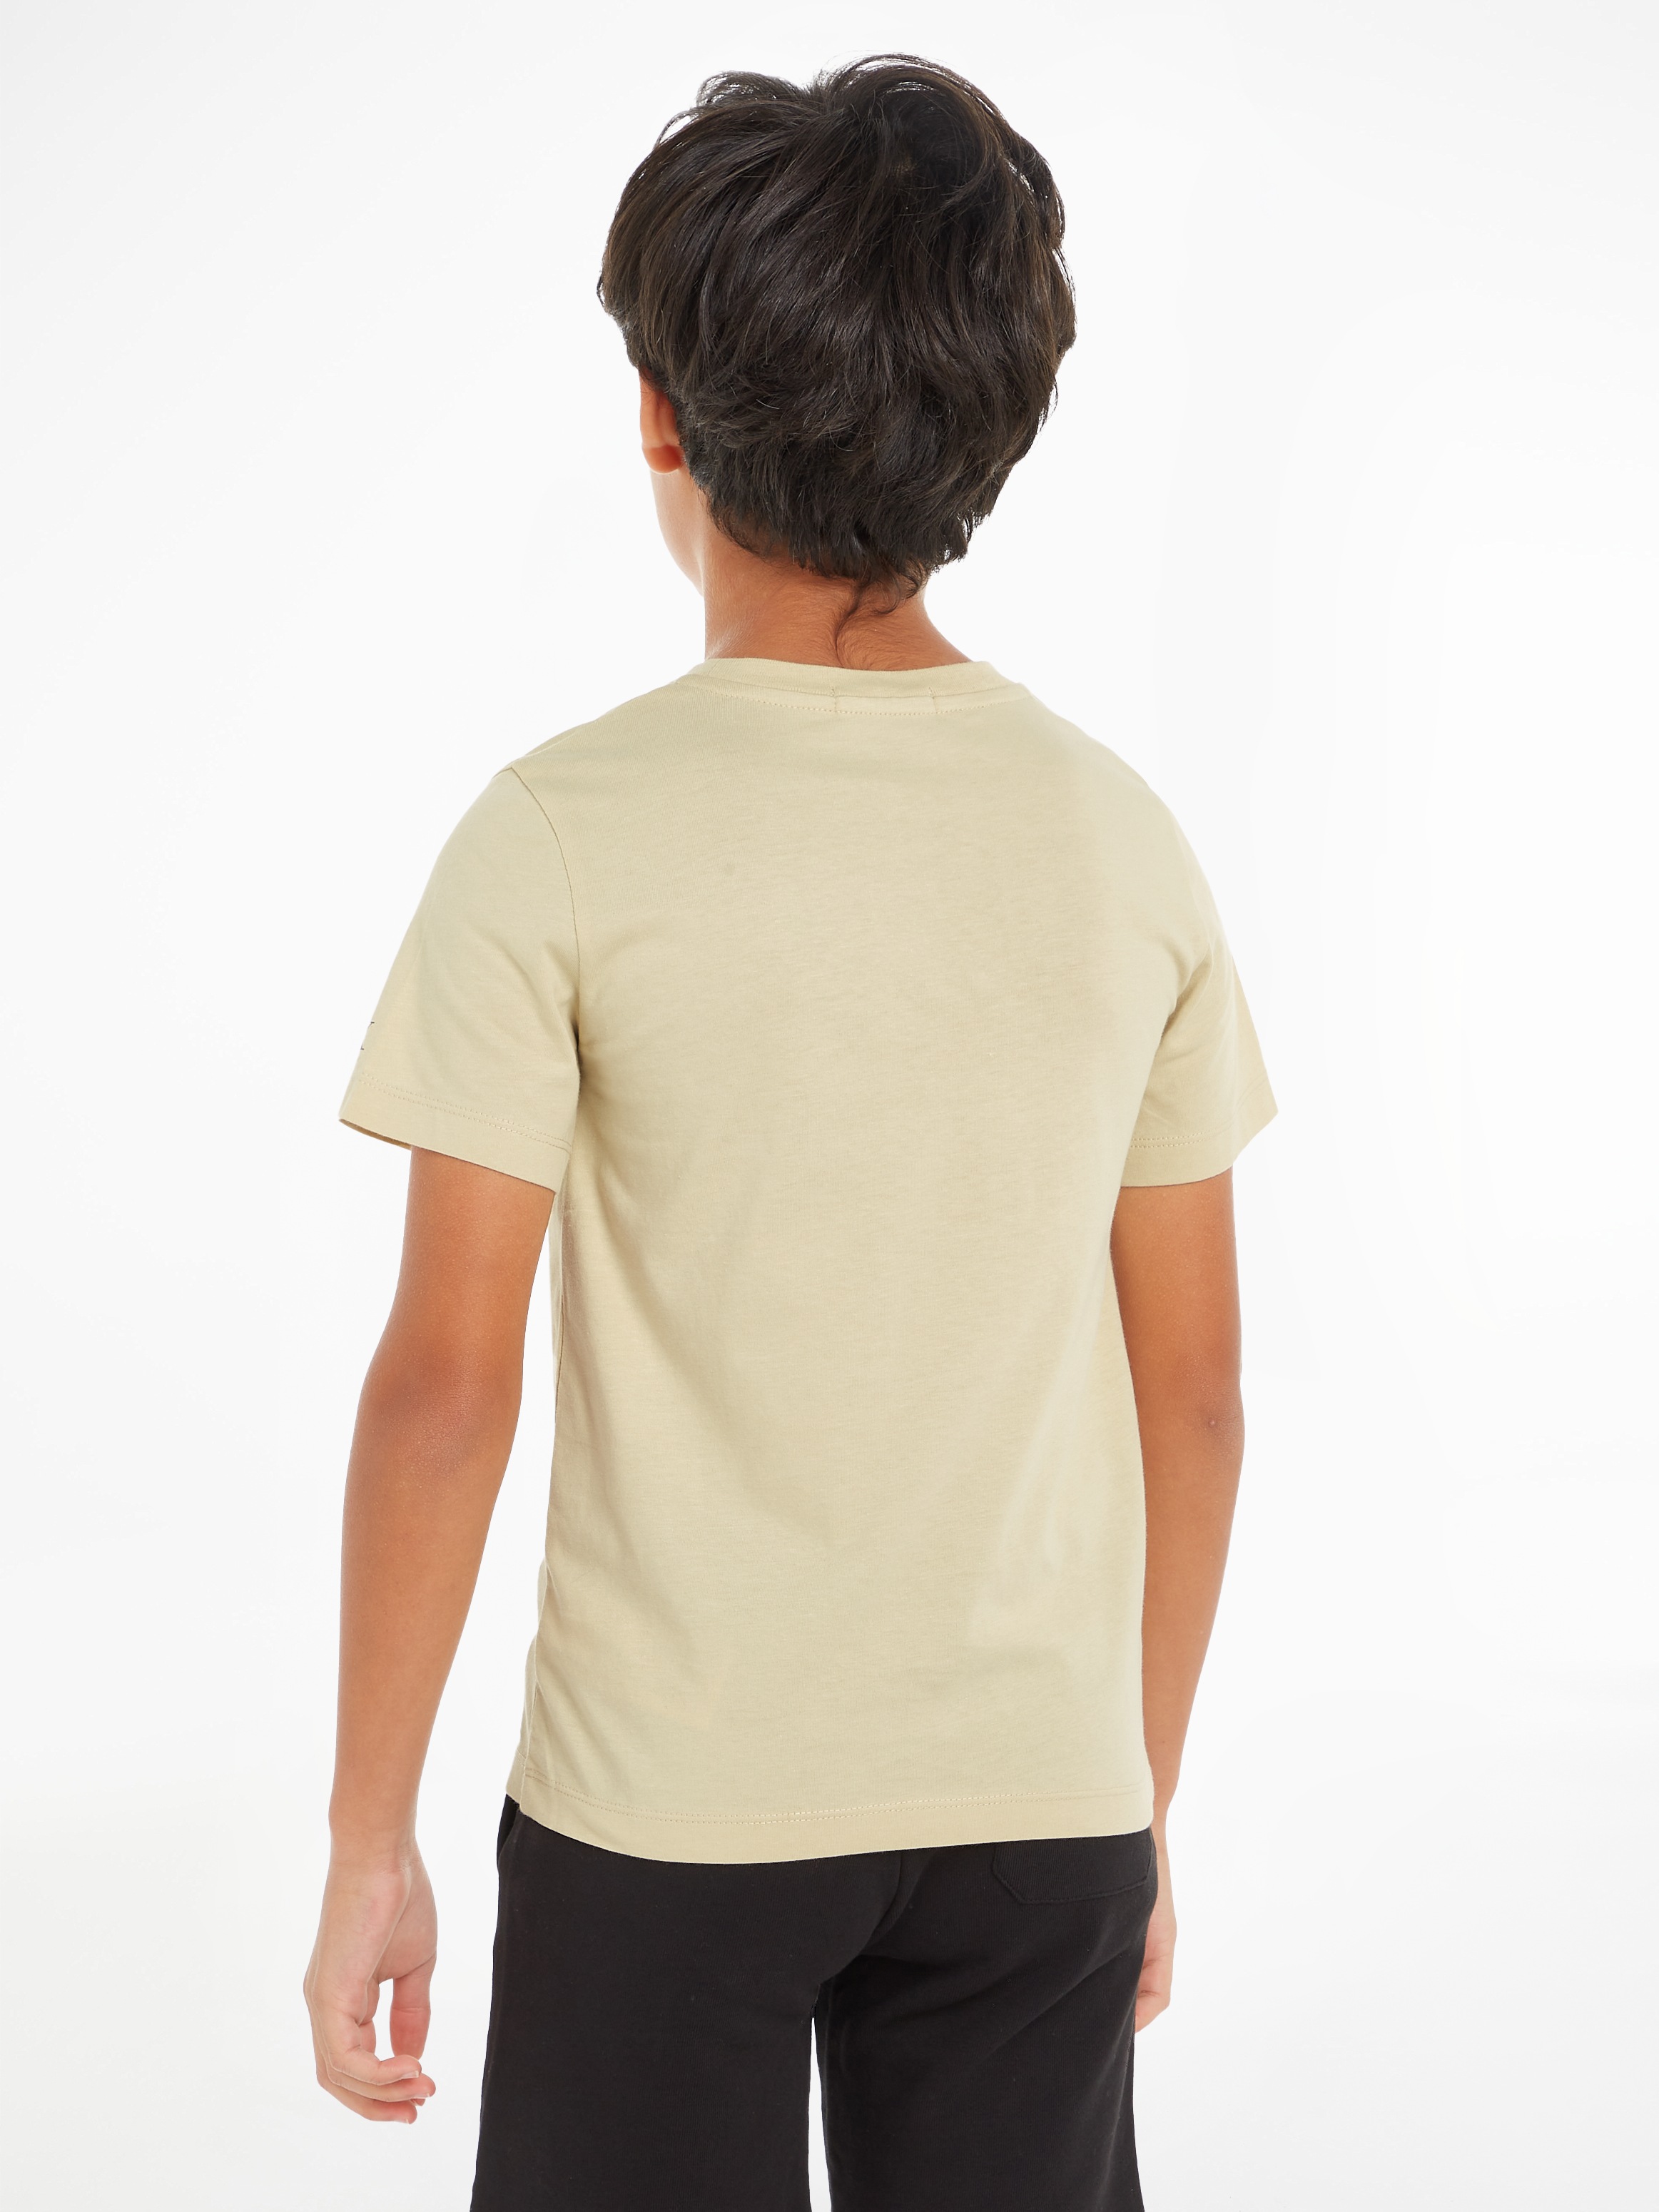 T-SHIRT«, Calvin für T-Shirt Jahre »CKJ LOGO Klein STACK Jeans bis Kinder 16 kaufen